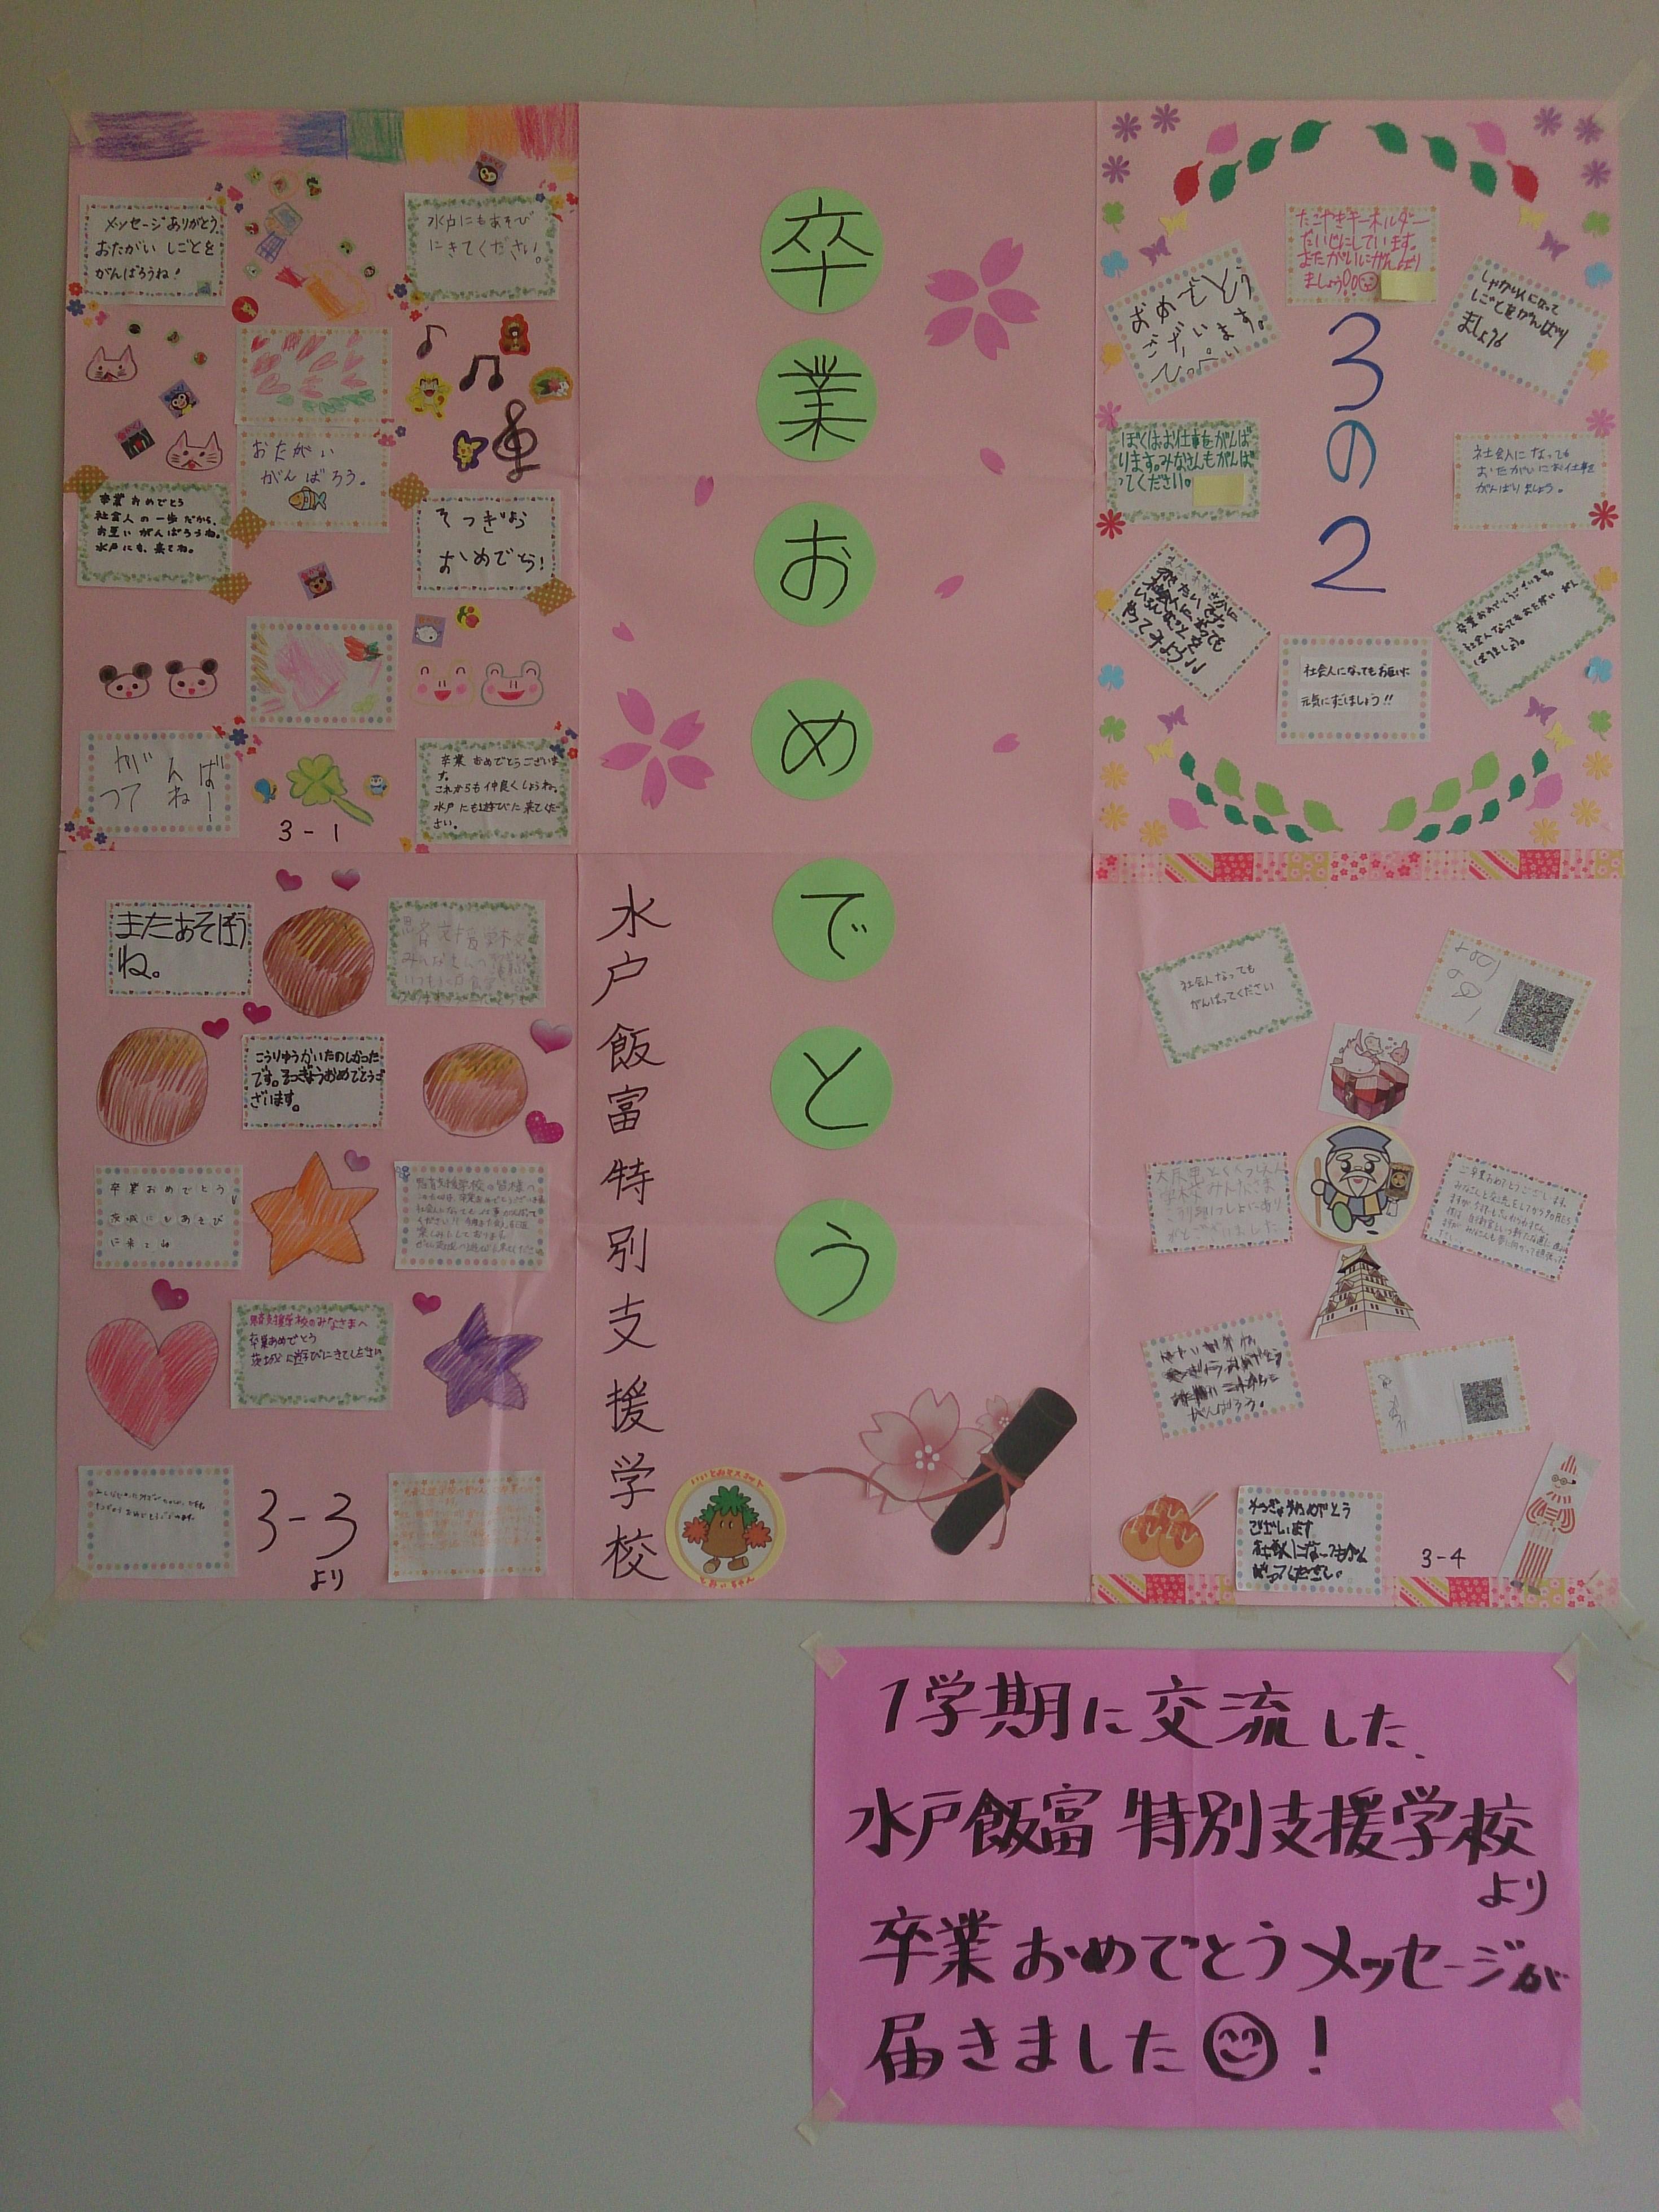 茨城県立水戸飯富特別支援学校より 卒業祝いのメッセージをいただきました 思斉のできごと